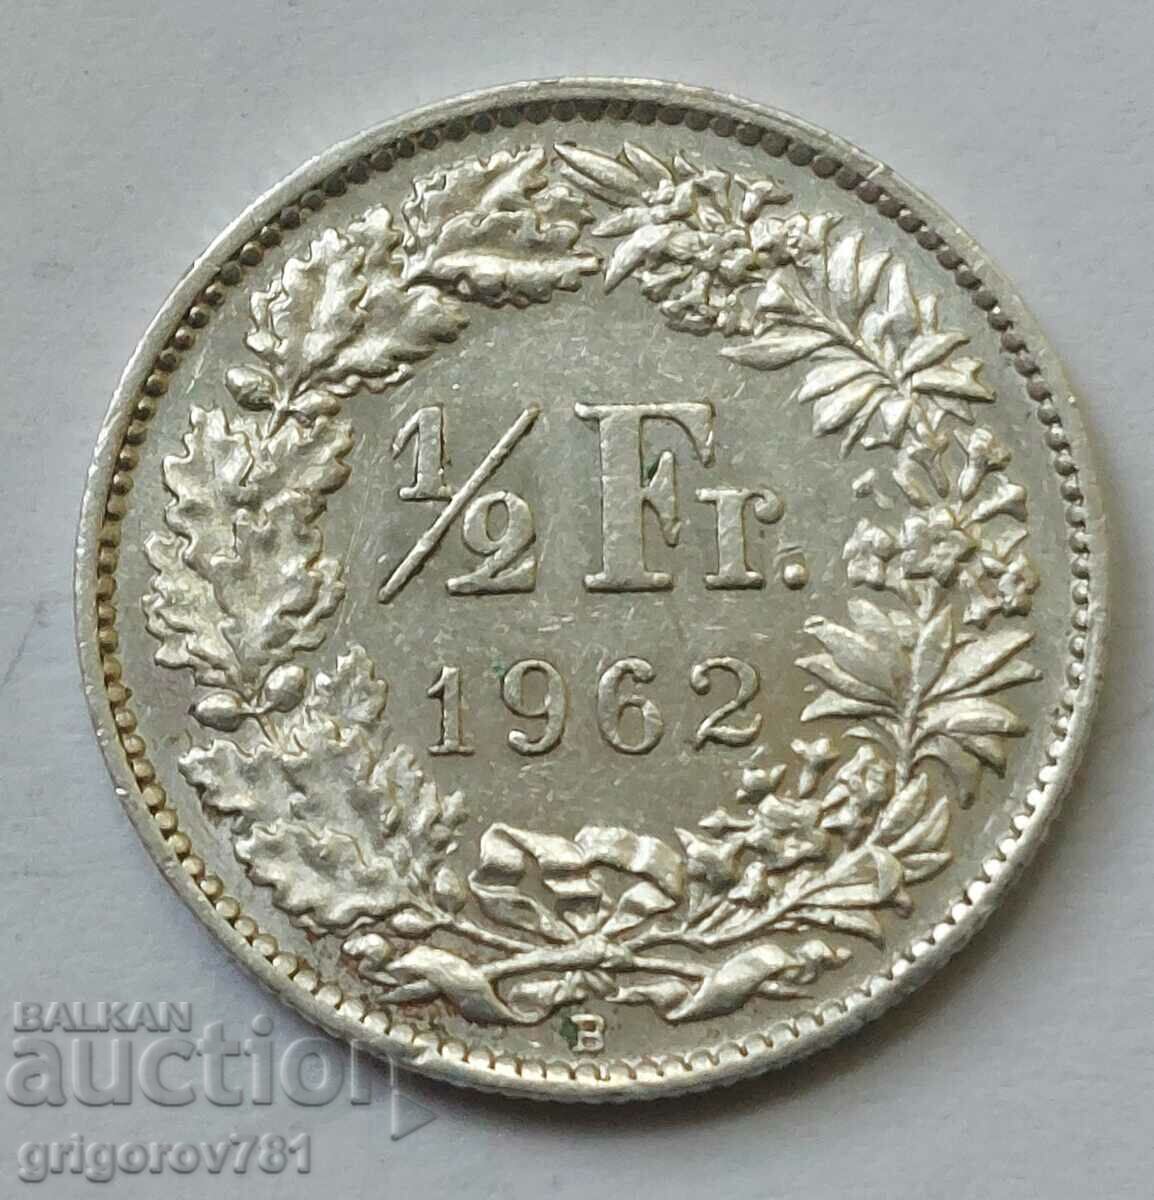 Ασημένιο φράγκο 1/2 Ελβετία 1962 Β - Ασημένιο νόμισμα #96